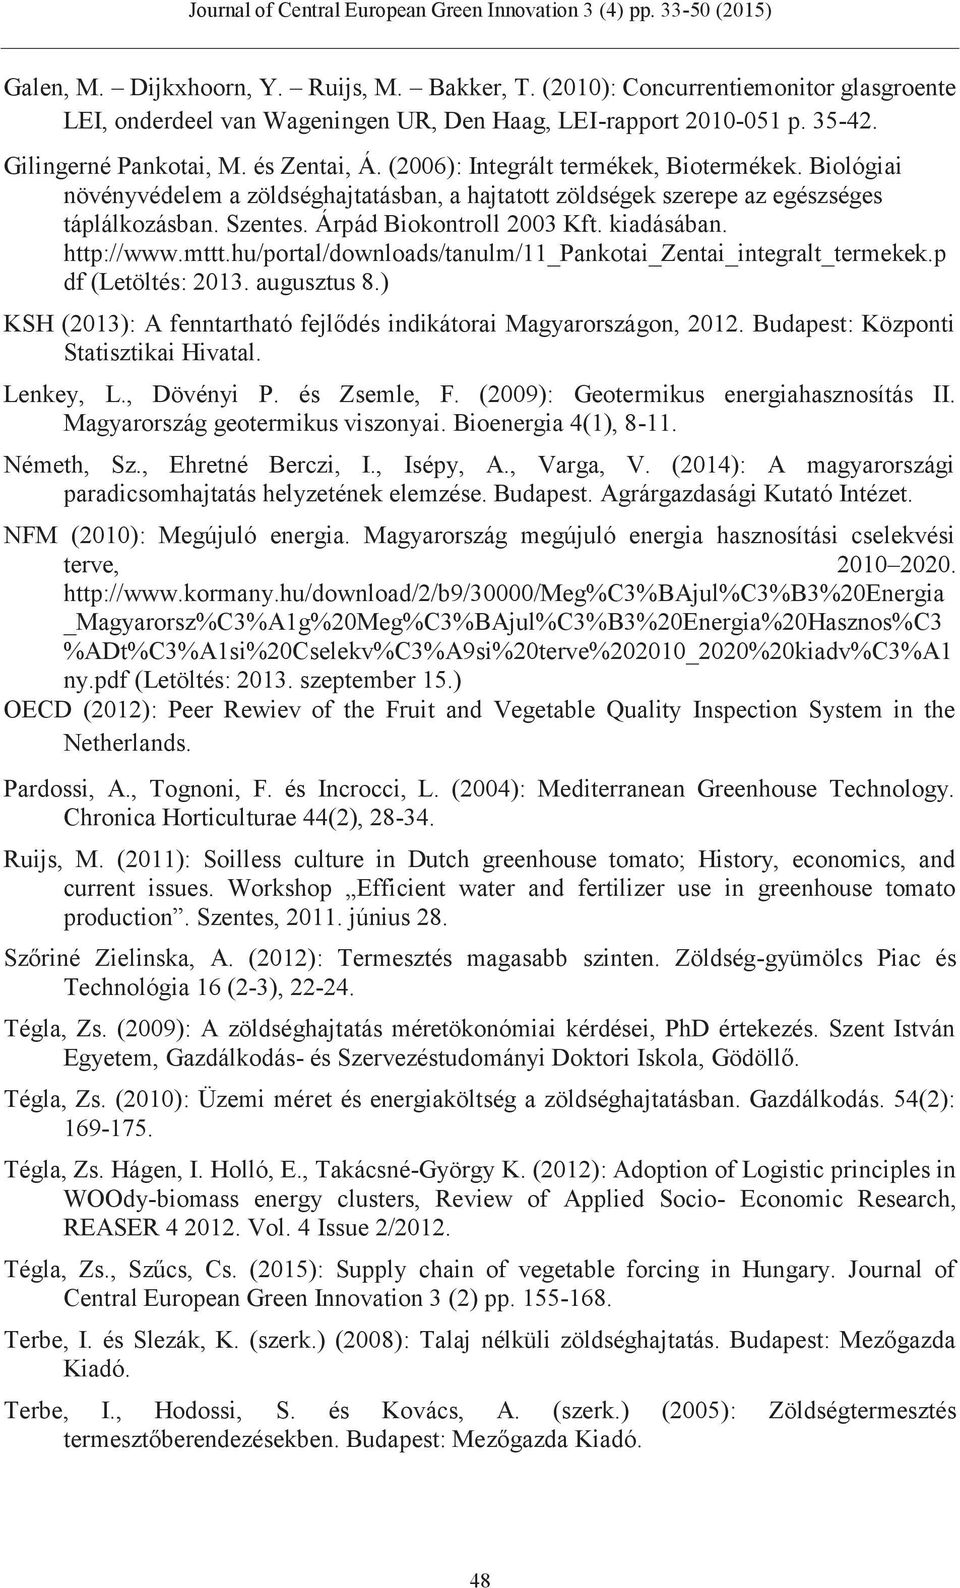 http://www.mttt.hu/portal/downloads/tanulm/11_pankotai_zentai_integralt_termekek.p df (Letöltés: 2013. augusztus 8.) KSH (2013): A fenntartható fejlődés indikátorai Magyarországon, 2012.